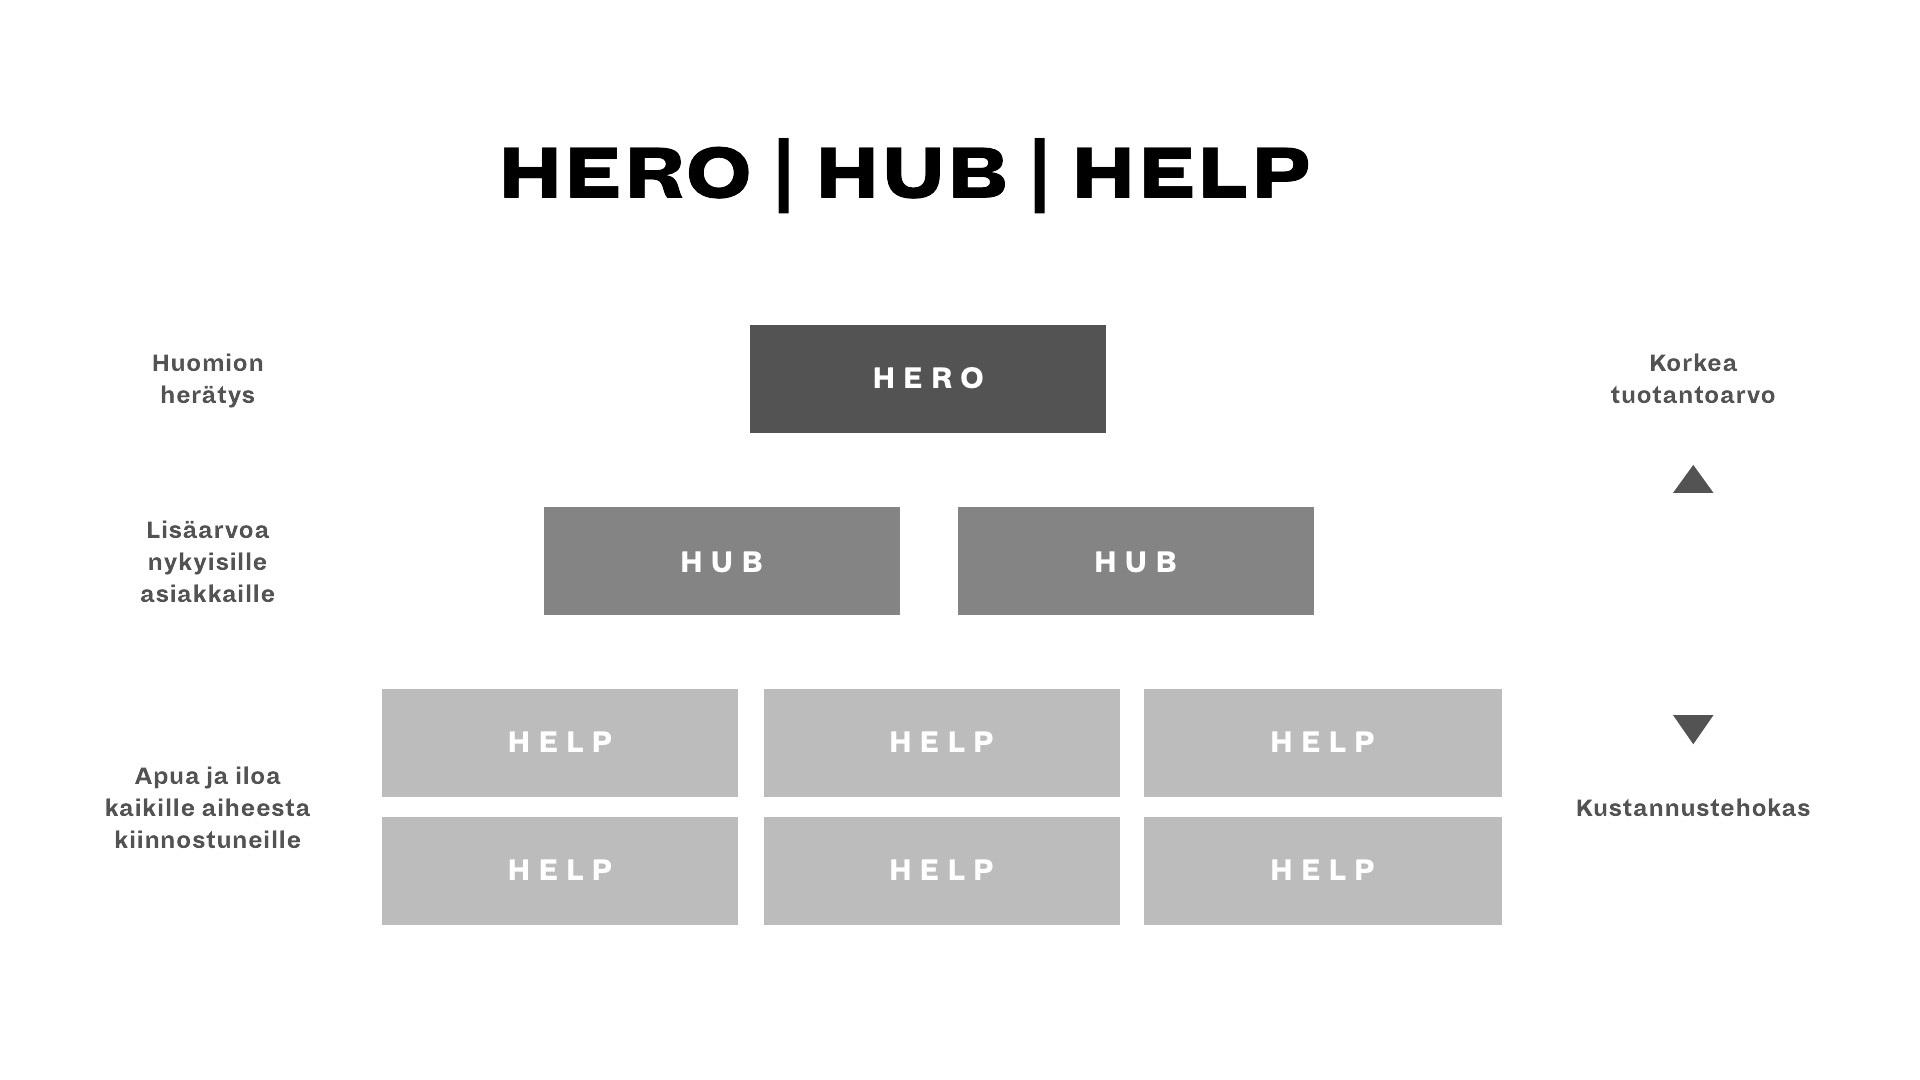 Hero-Hub-Help sisältöjen jakautuminen eri luokkiin